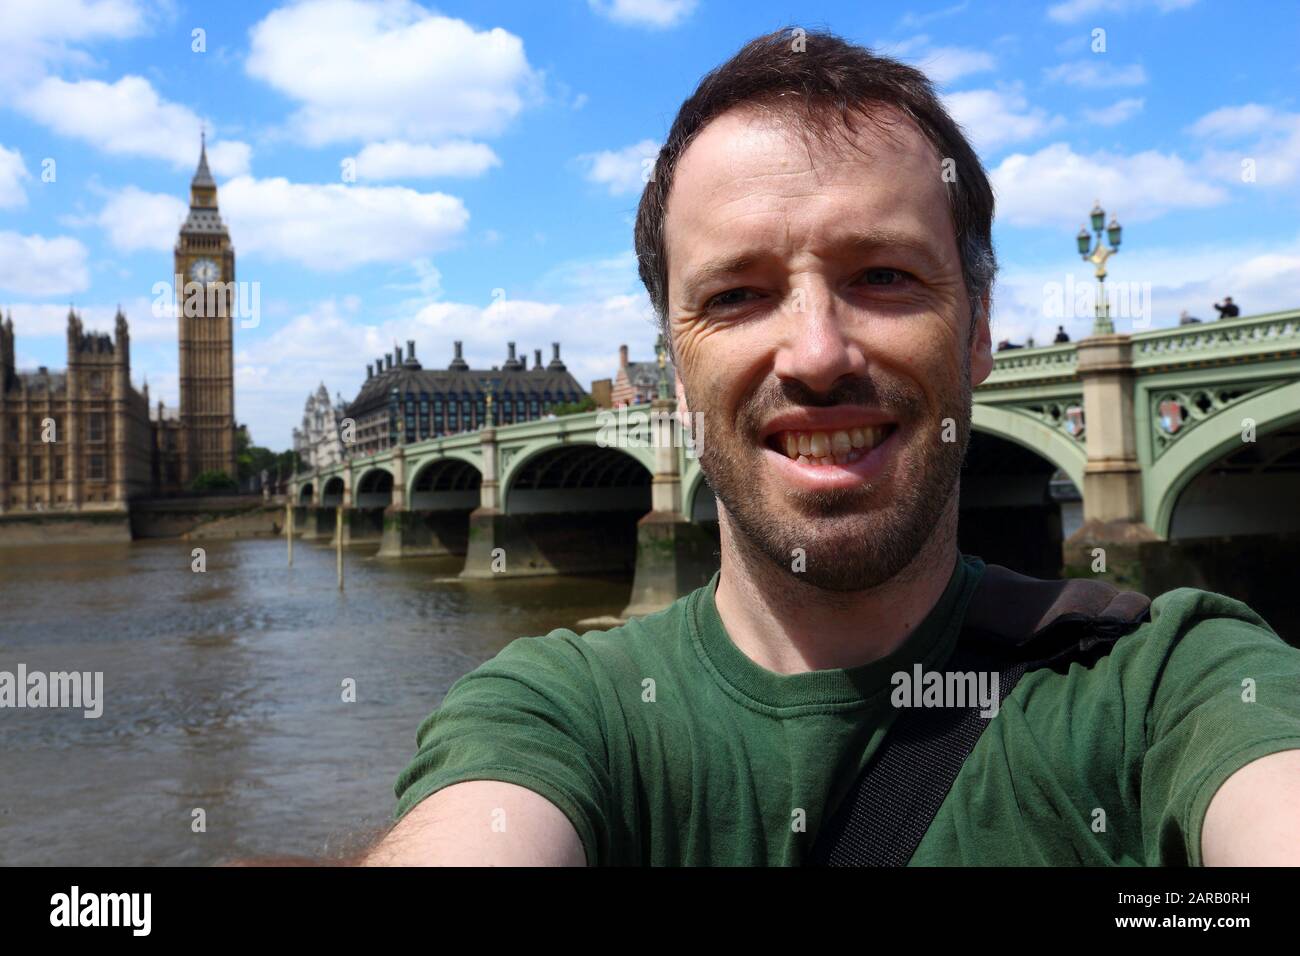 Selfie turística de Londres con el Parlamento y el Big Ben. Foto de stock